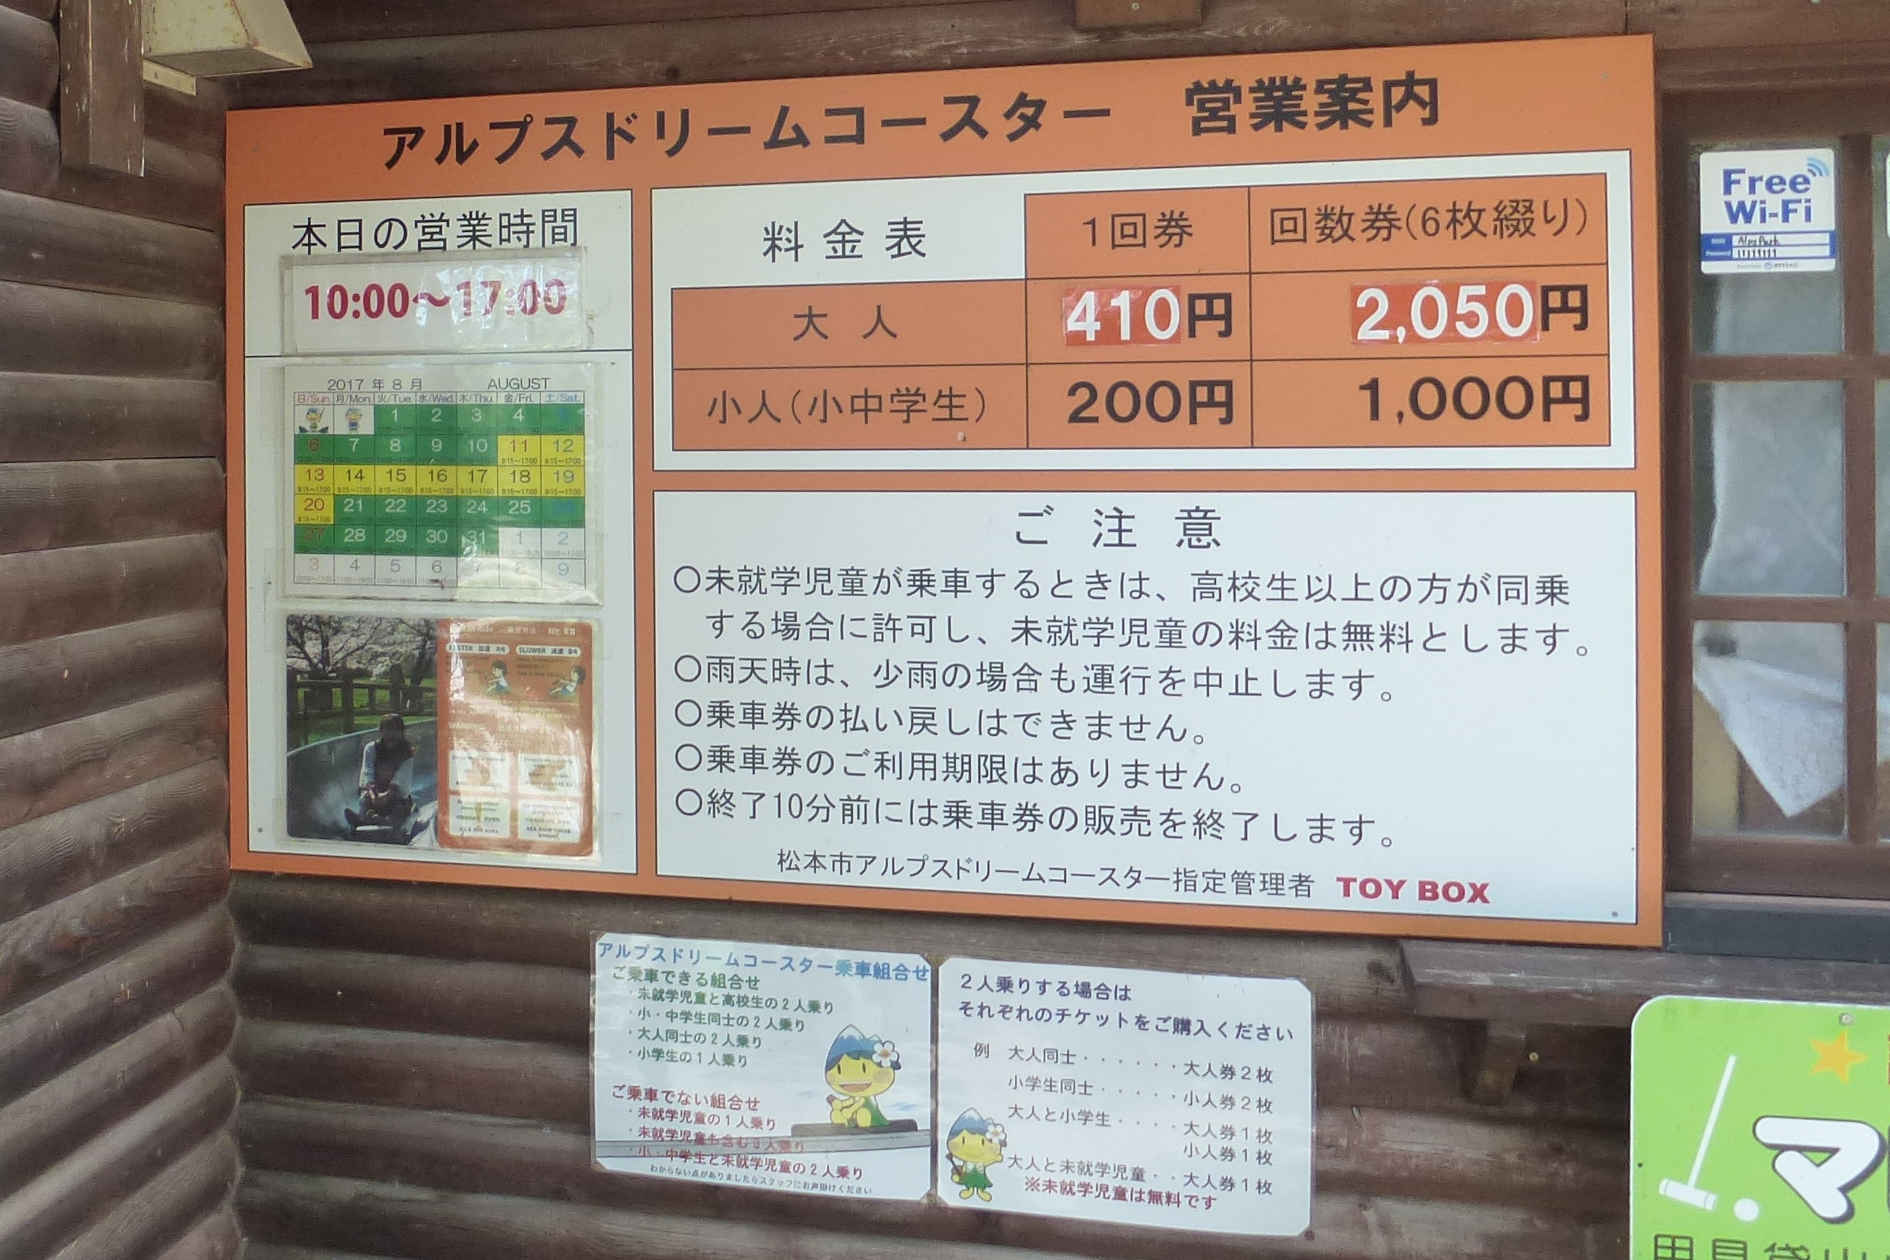 松本市アルプス公園 ドリームコースター料金表